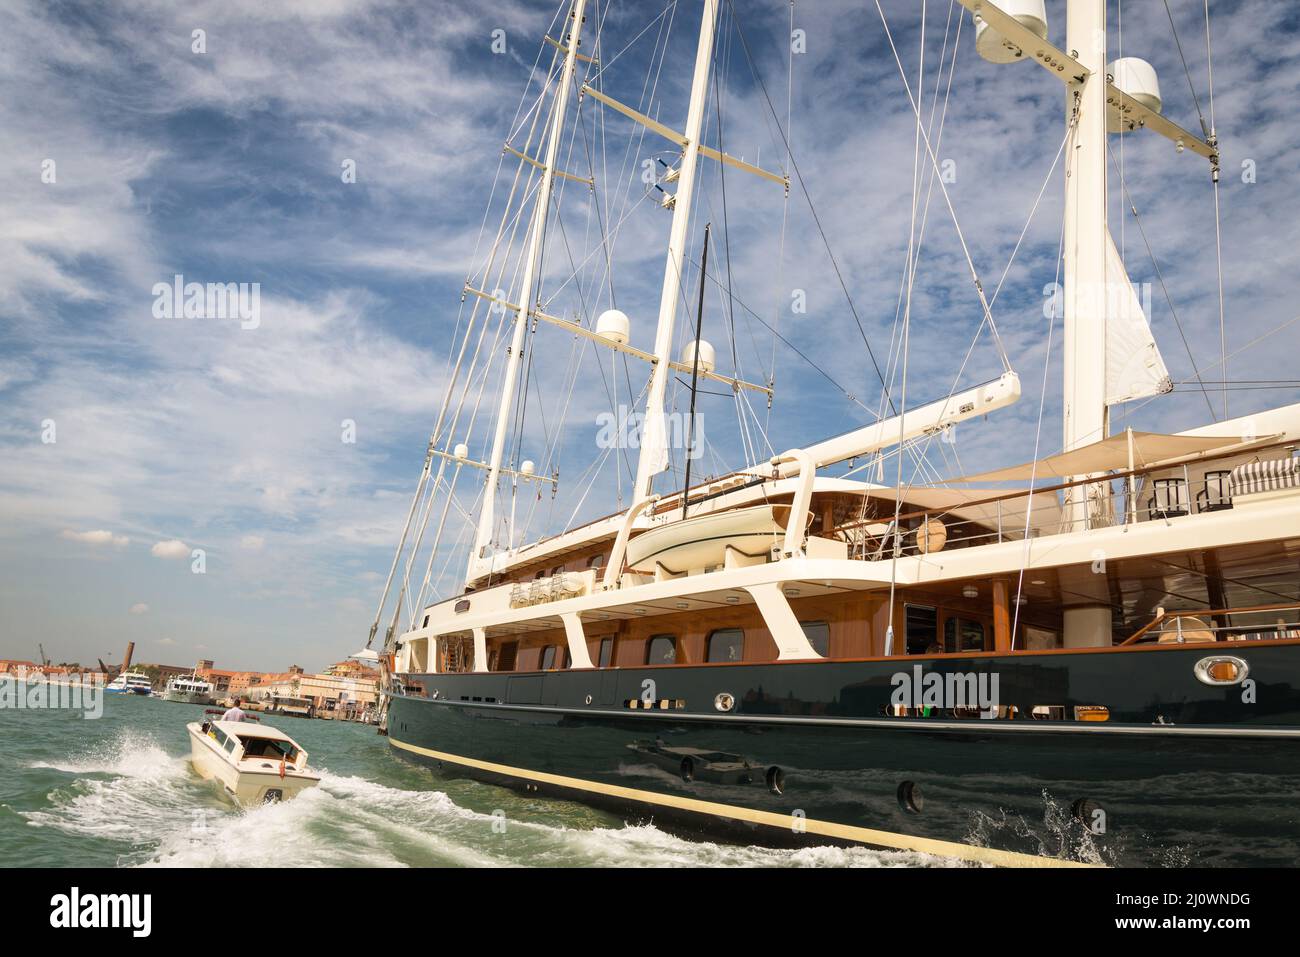 Ein altes Segelschiff aus Holz, das auf der Insel Giudecca, gegenüber dem Markusplatz in Venedig, Italien, festgemacht ist. An einem bewölkten Tag Stockfoto